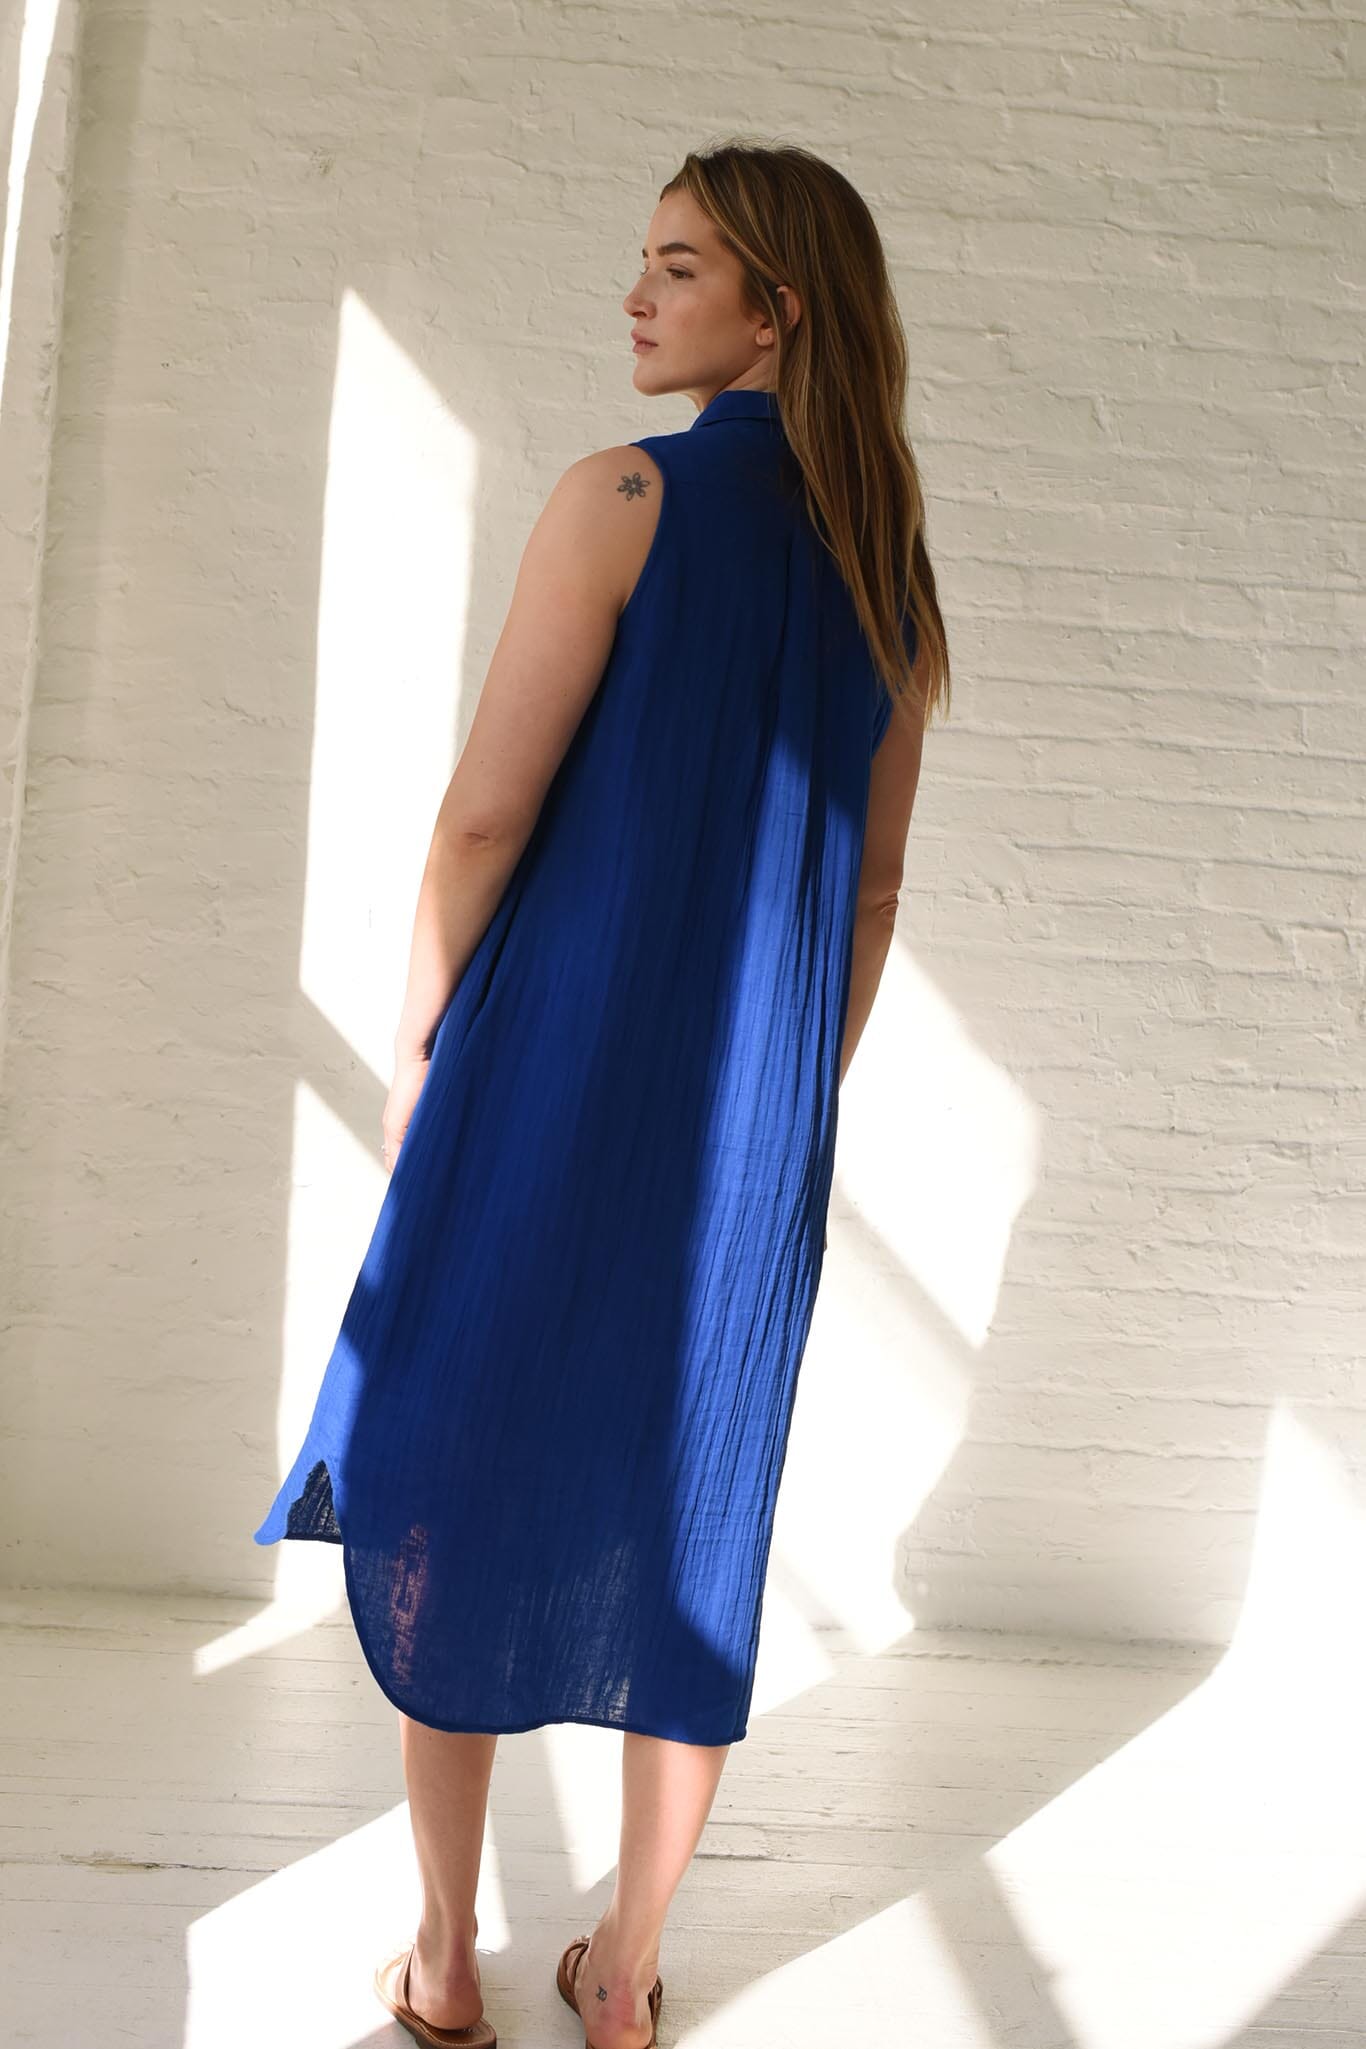 best sun dress for summer sleeveless cotton shirt dress. Brooklyn style cloth